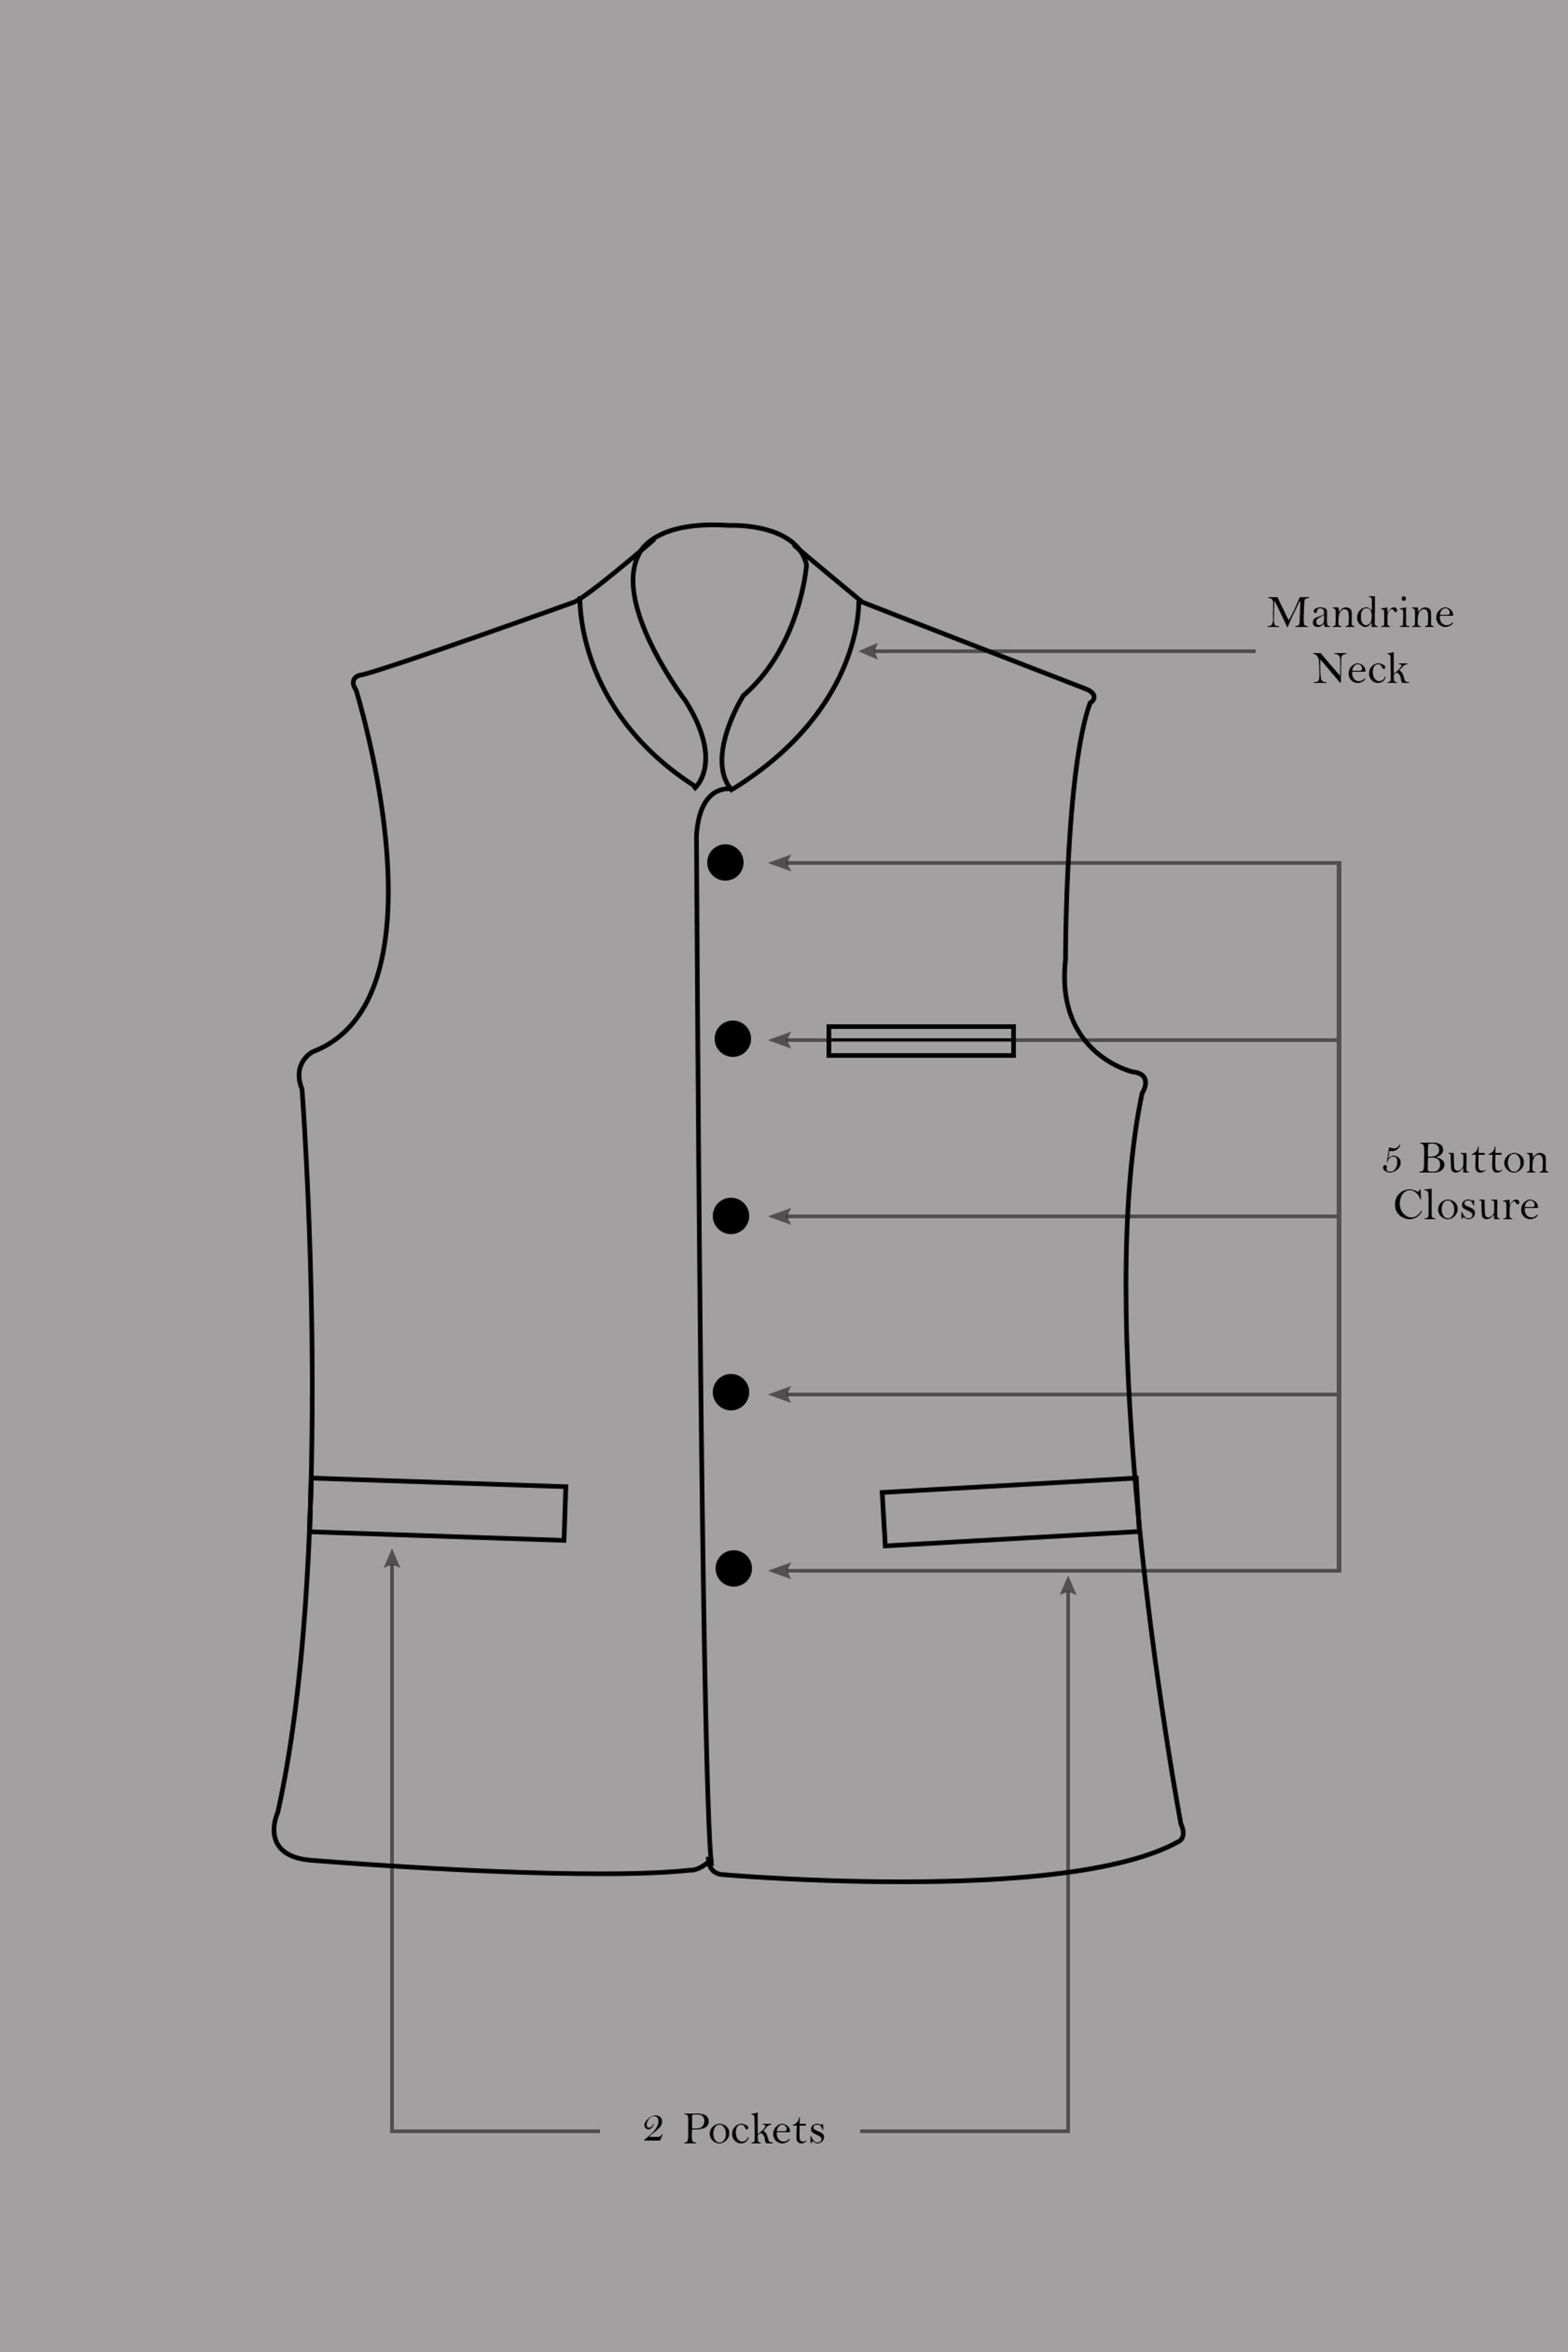 Maize Cream Cross Placket Bandhgala Premium Cotton Stretchable Traveler Suit